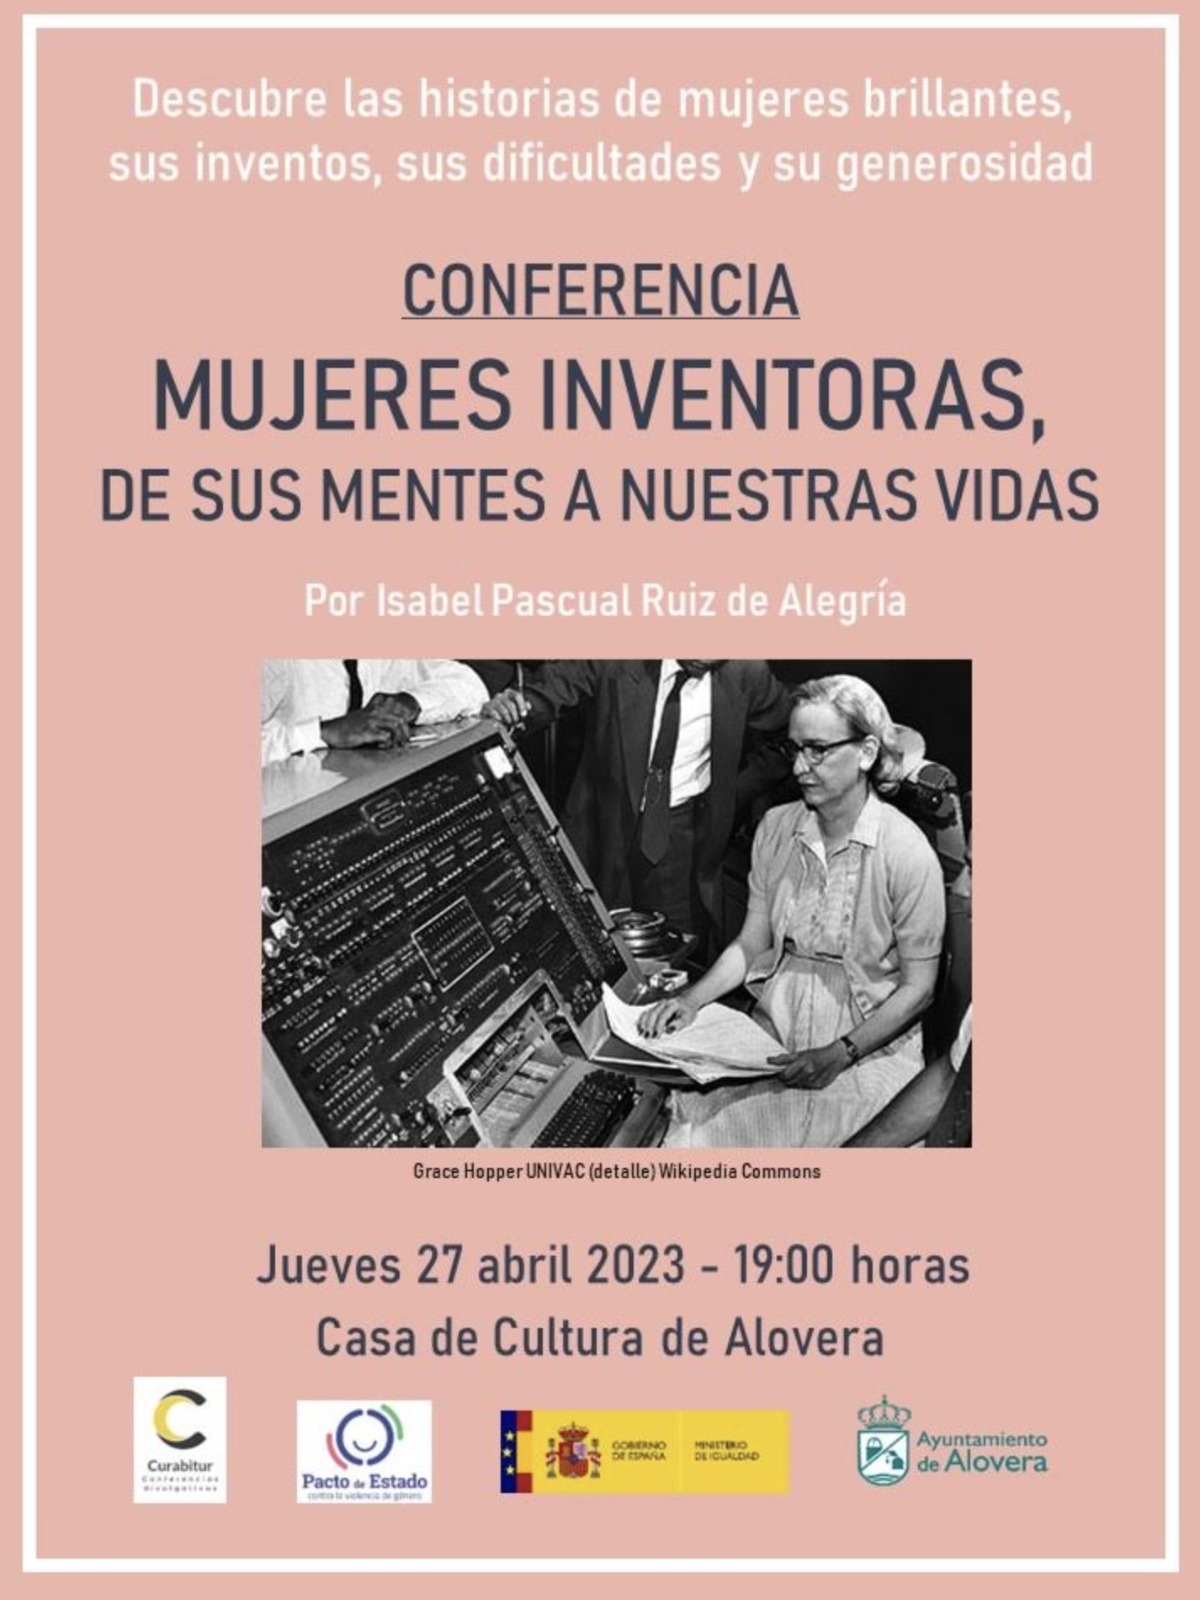 Conferencia sobre mujeres inventoras en la Casa de la Cultura de Alovera